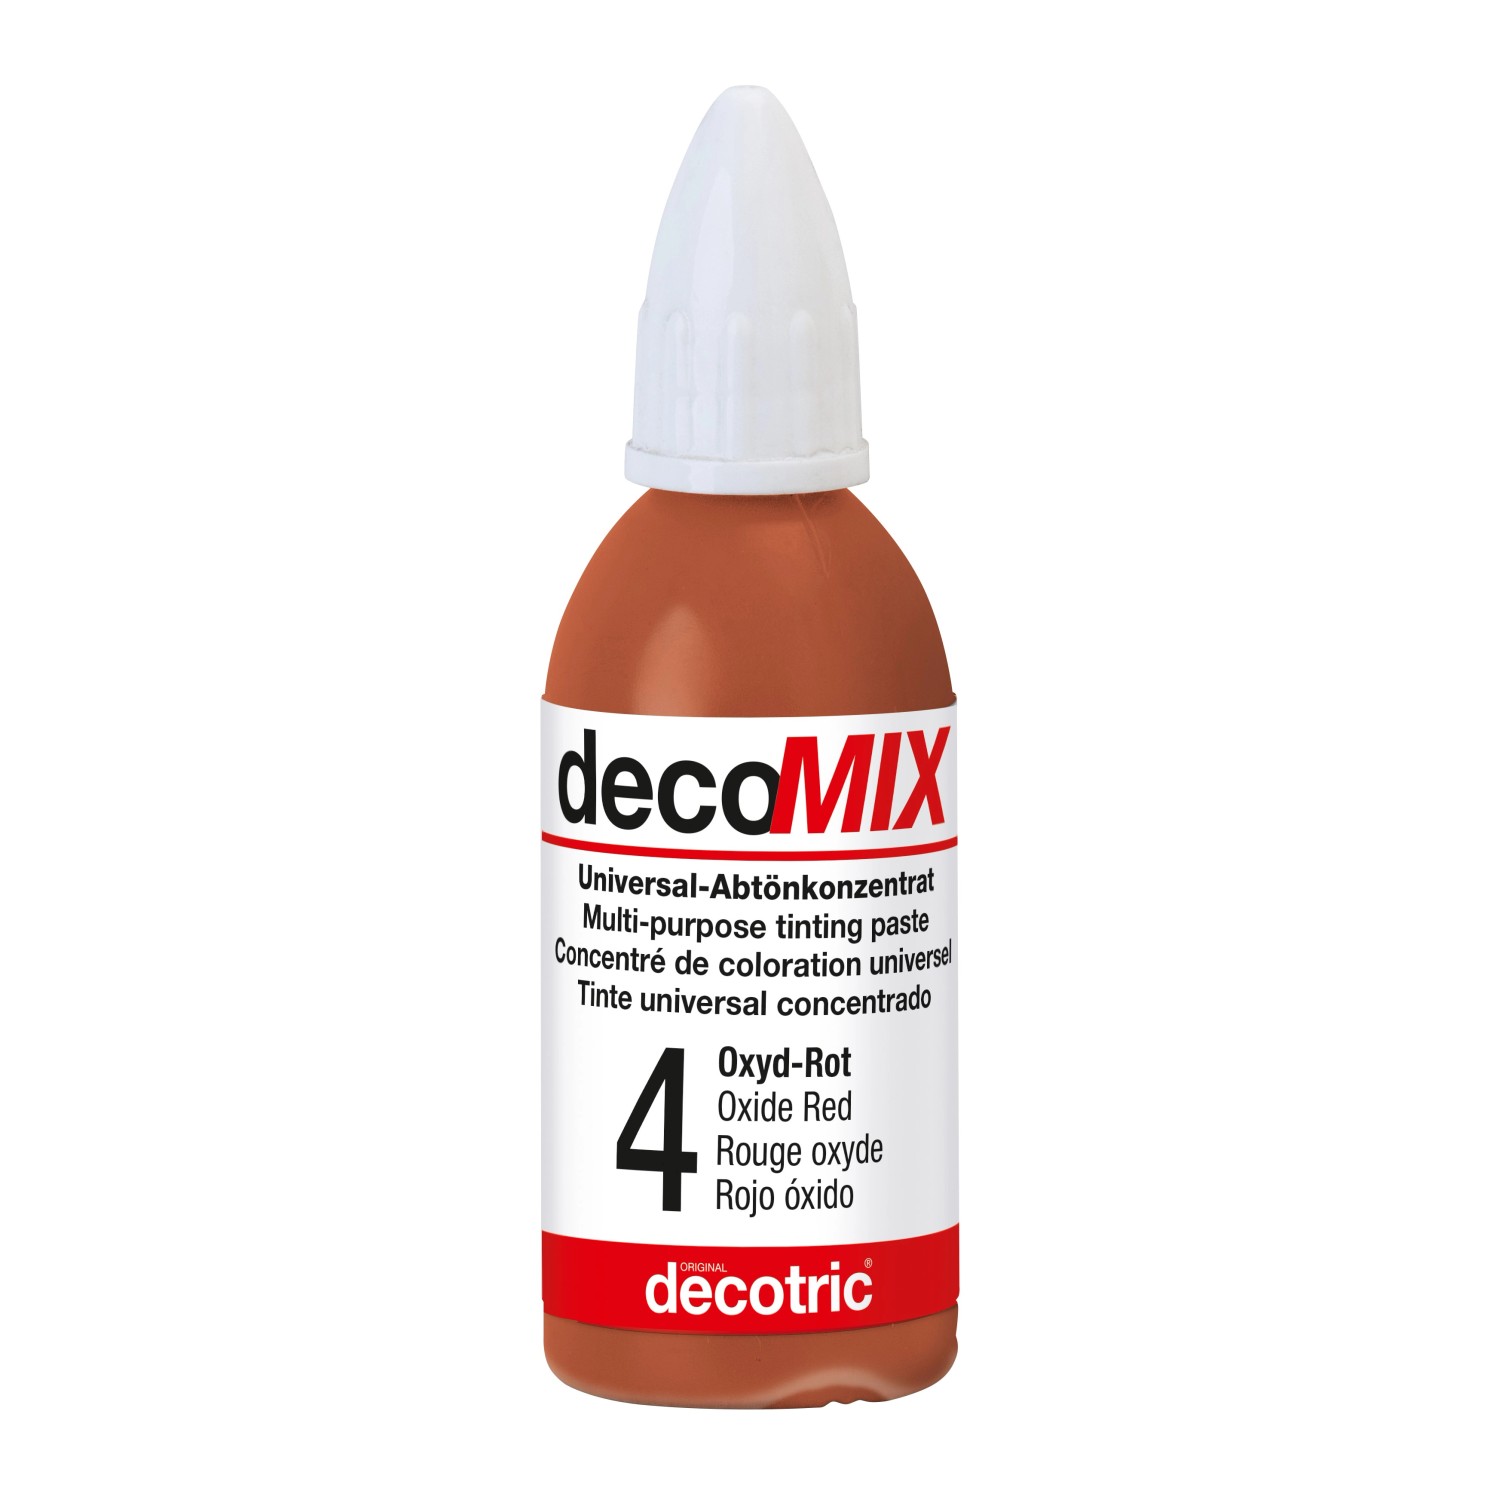 Decomix Universal-Abtönkonzentrat Oxyd-Rot 20 ml von decotric